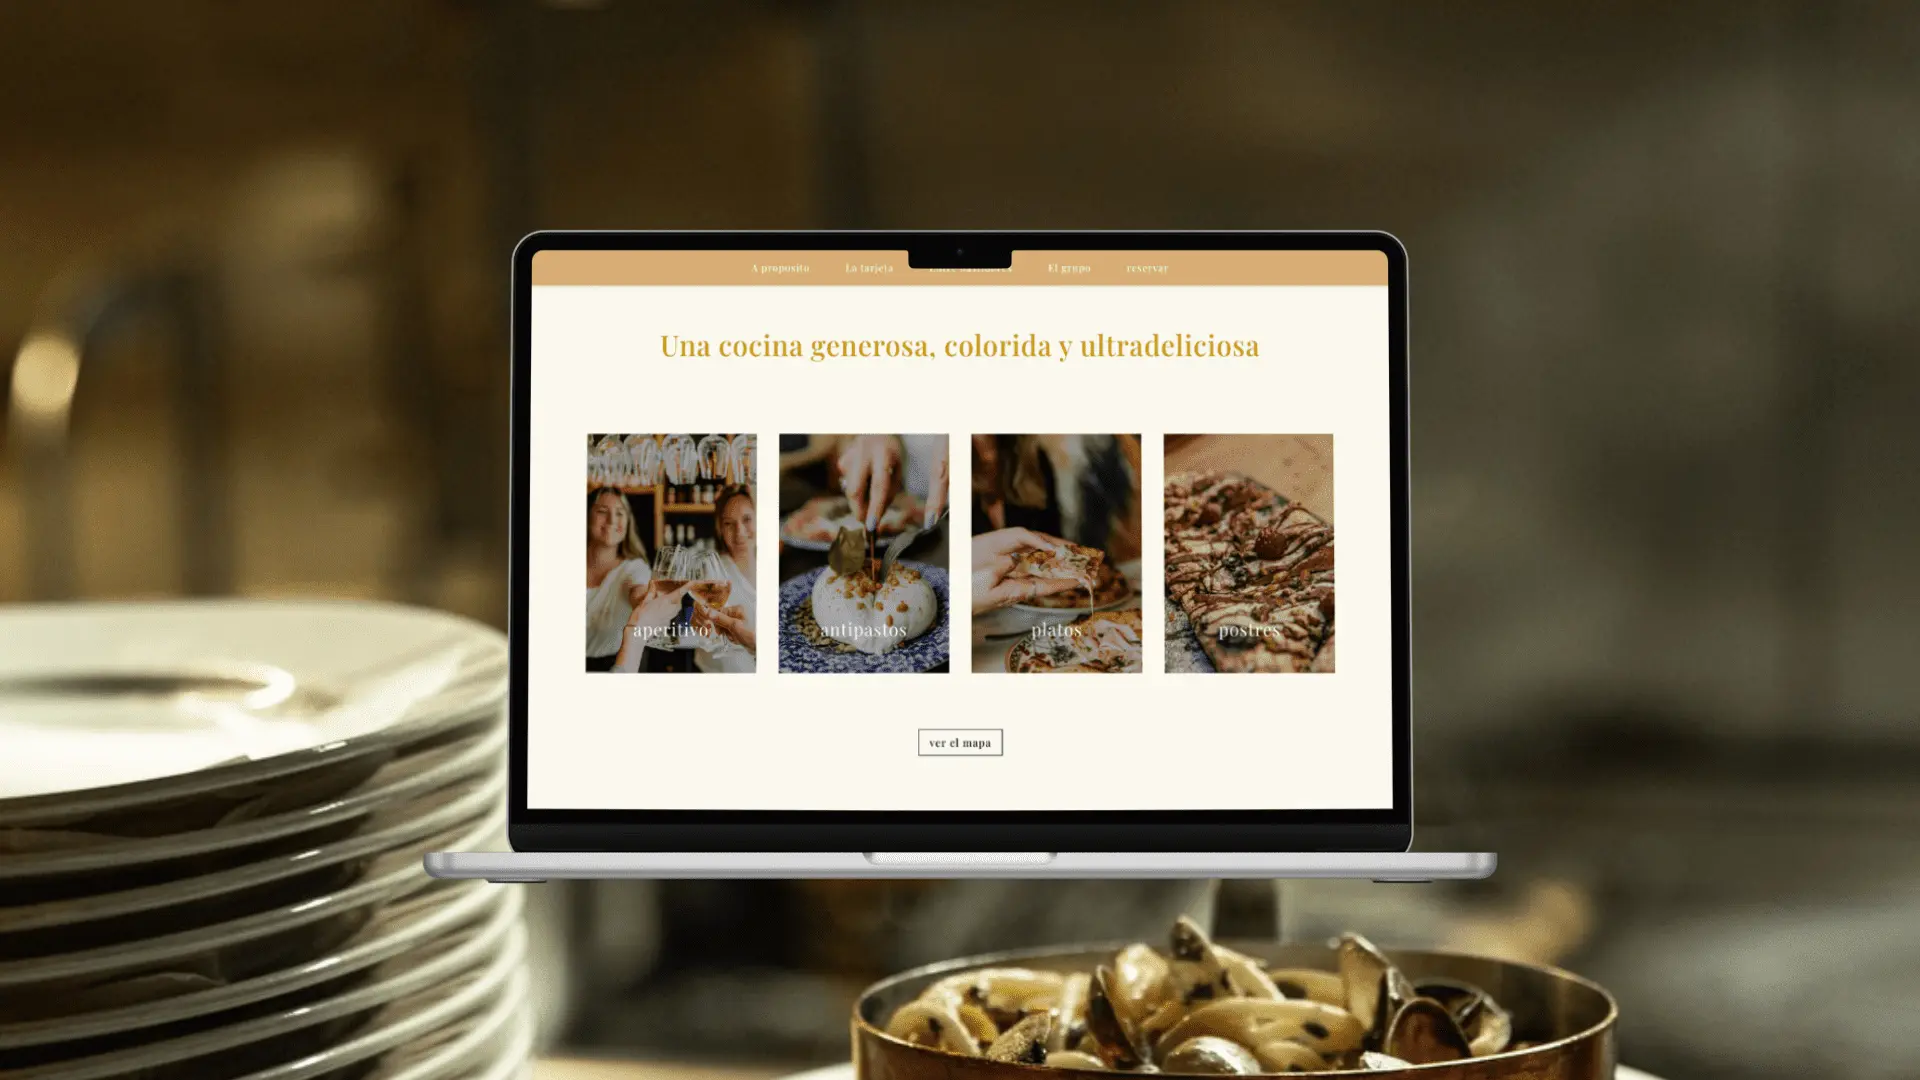 ordenador mac con la pagina web de un restaurante con platos de fondo